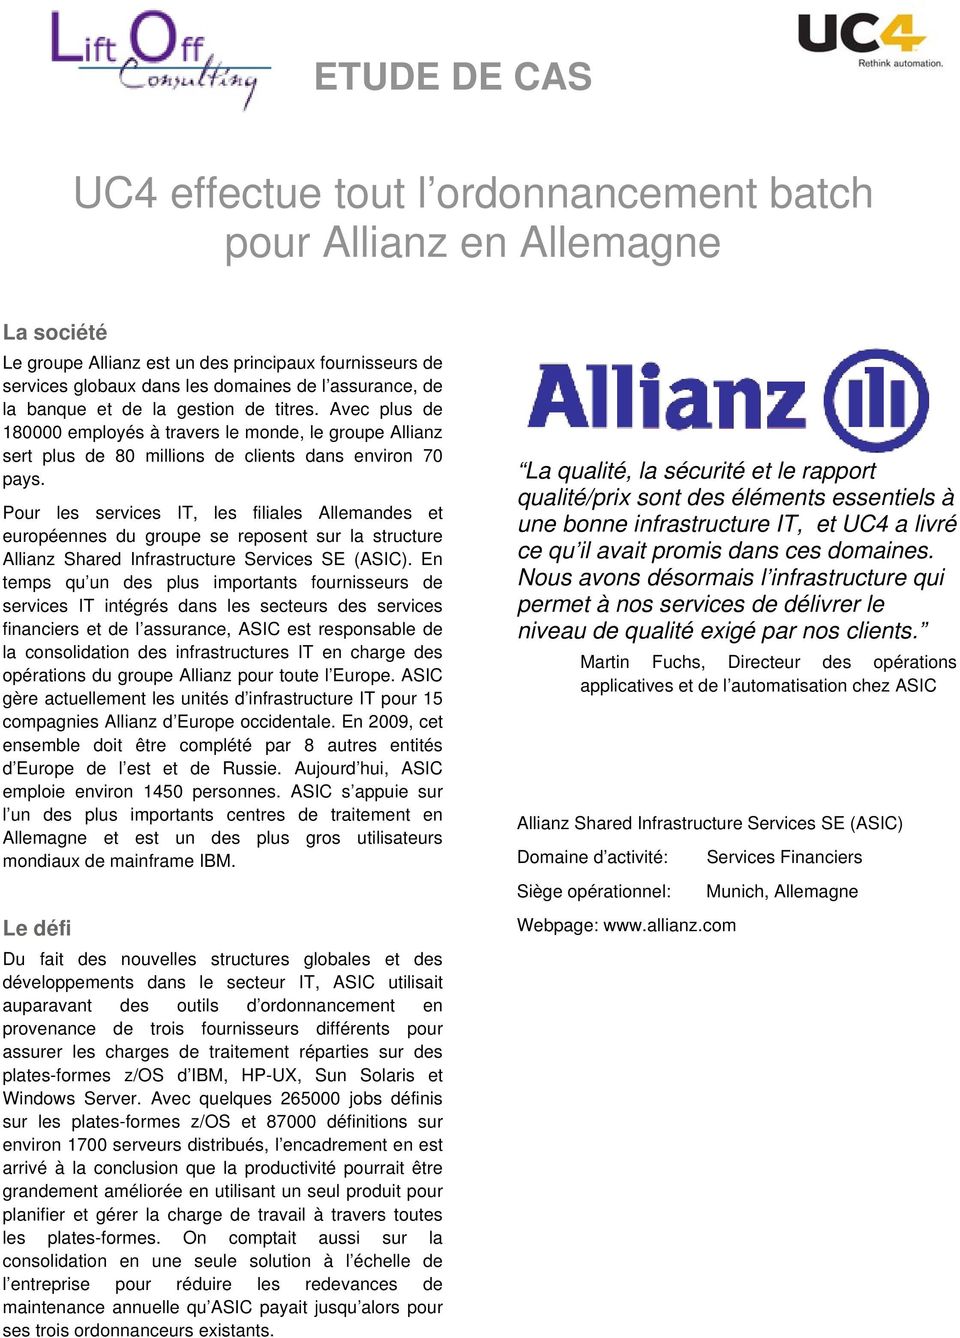 Pour les services IT, les filiales Allemandes et européennes du groupe se reposent sur la structure Allianz Shared Infrastructure Services SE (ASIC).